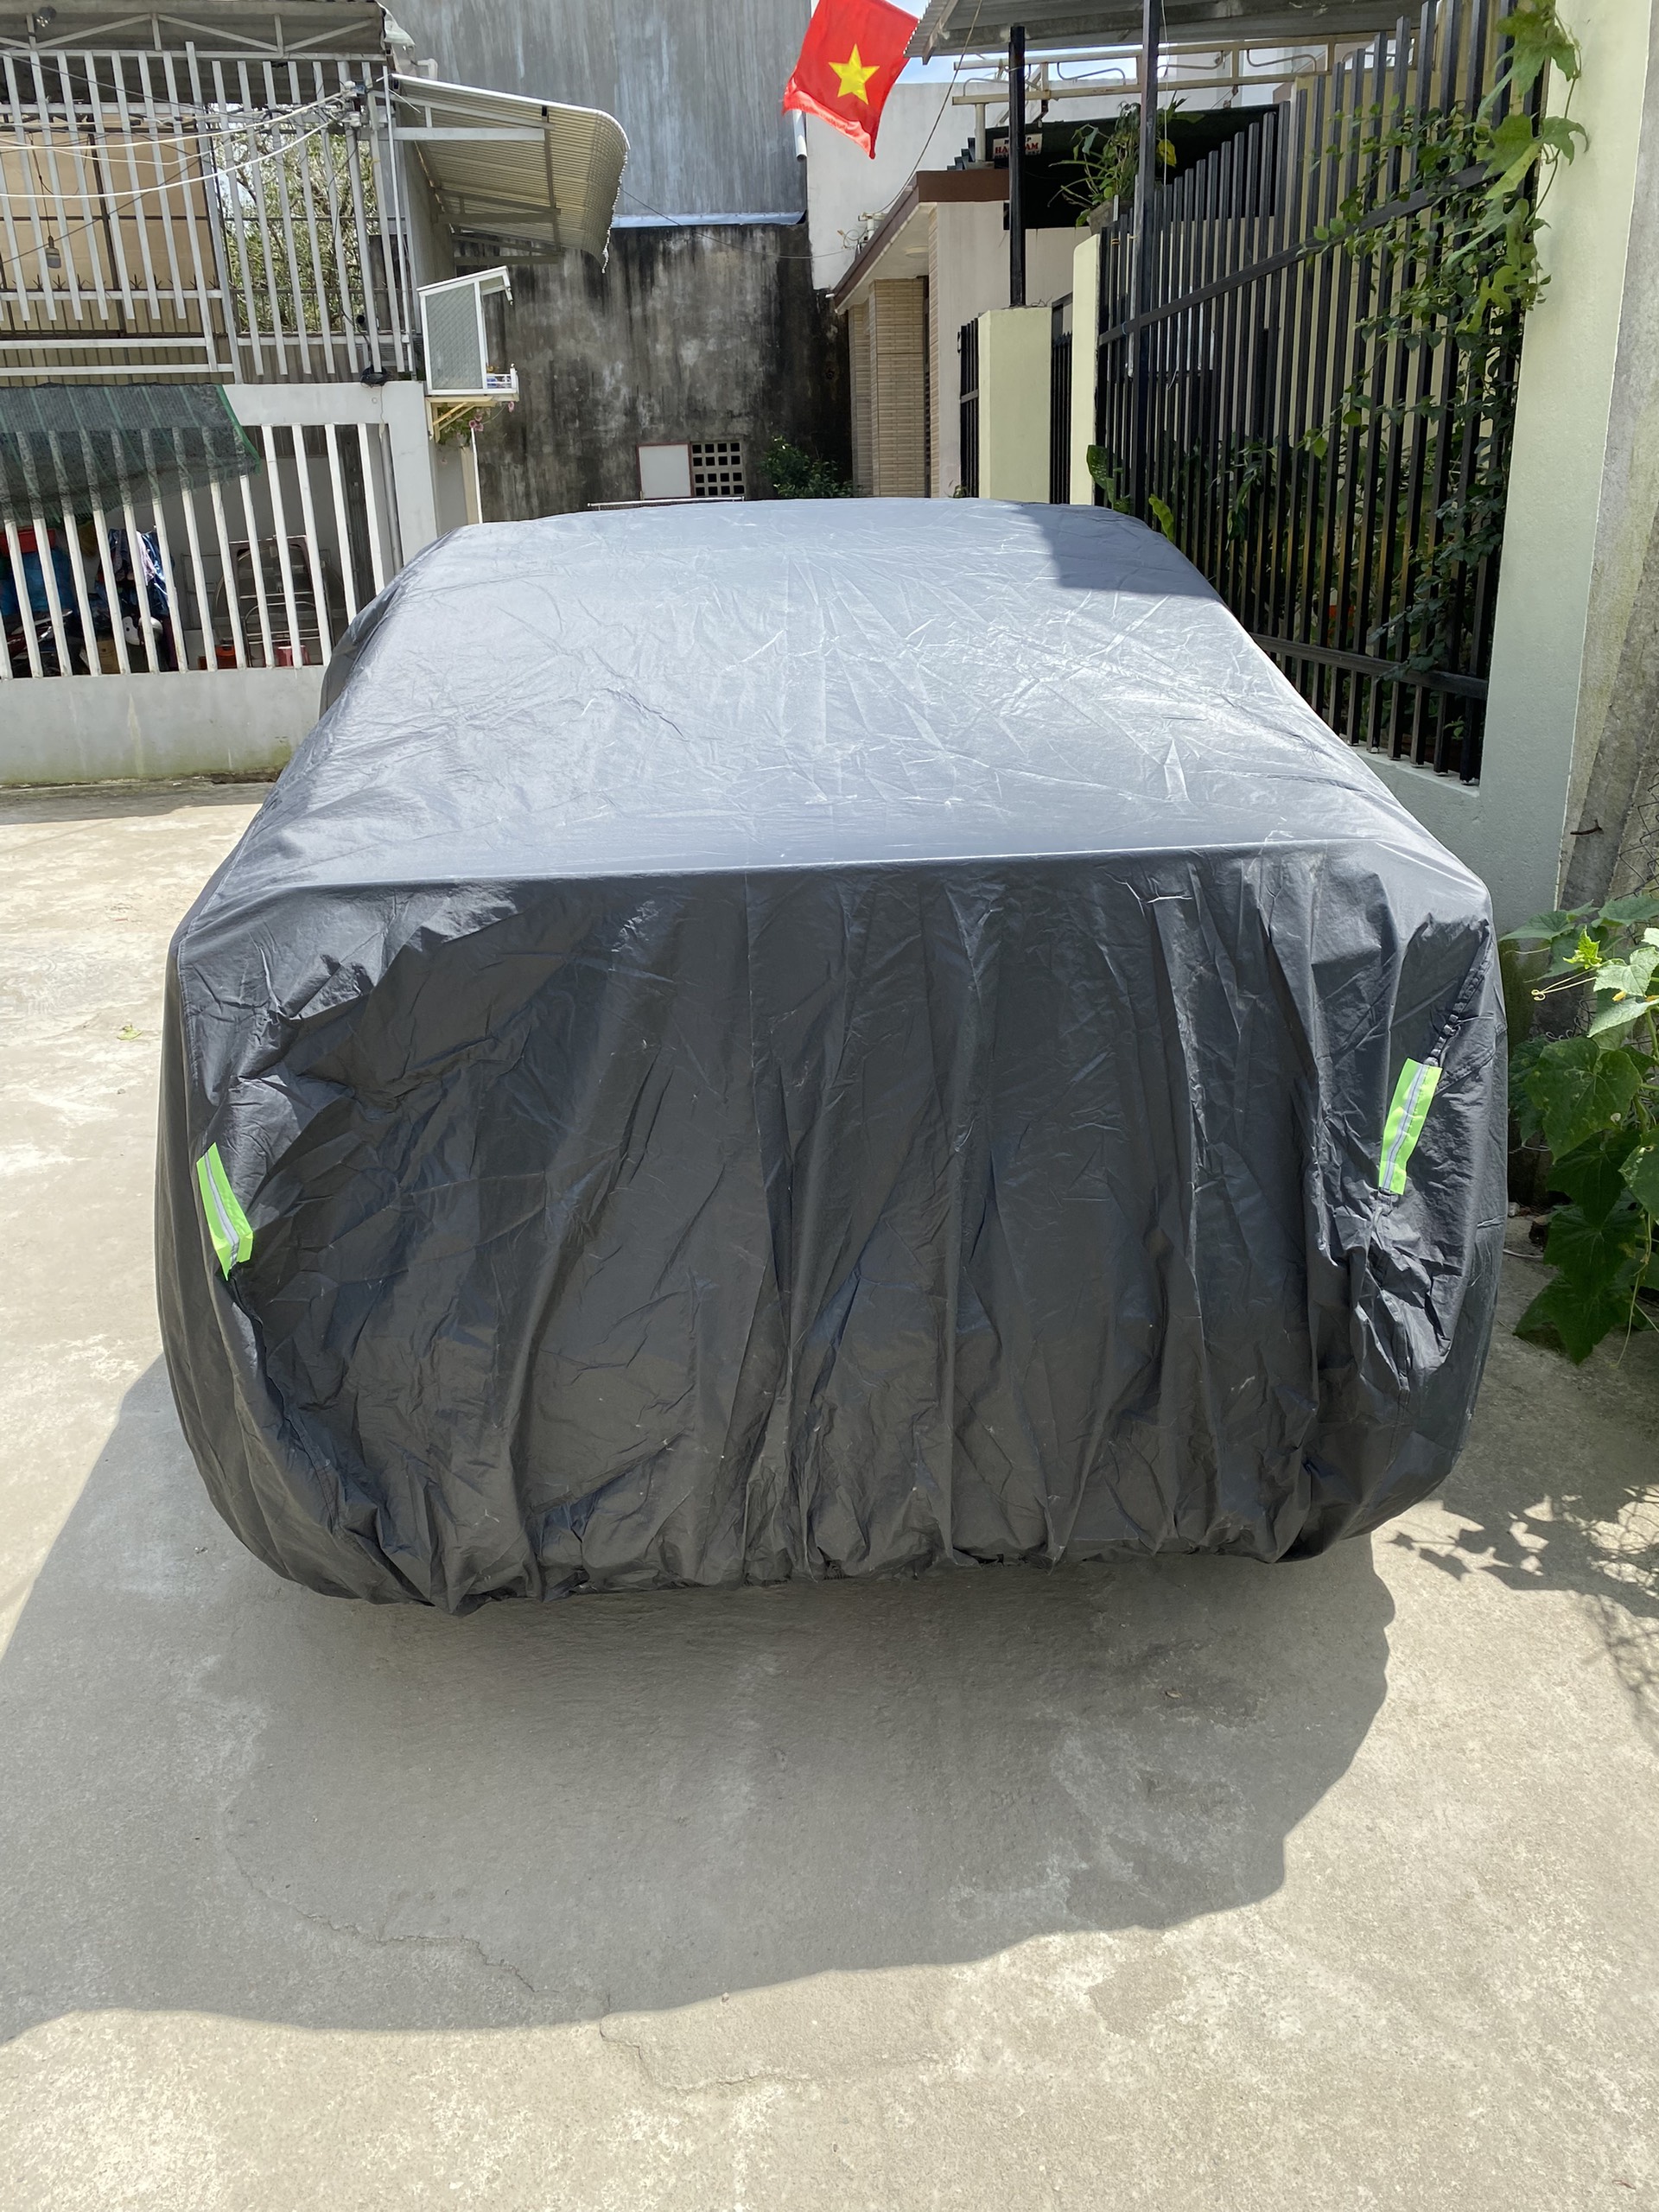 Bạt phủ ô tô thương hiệu MACSIM dành cho Ford Focus - màu đen và màu ghi - bạt phủ trong nhà và ngoài trời